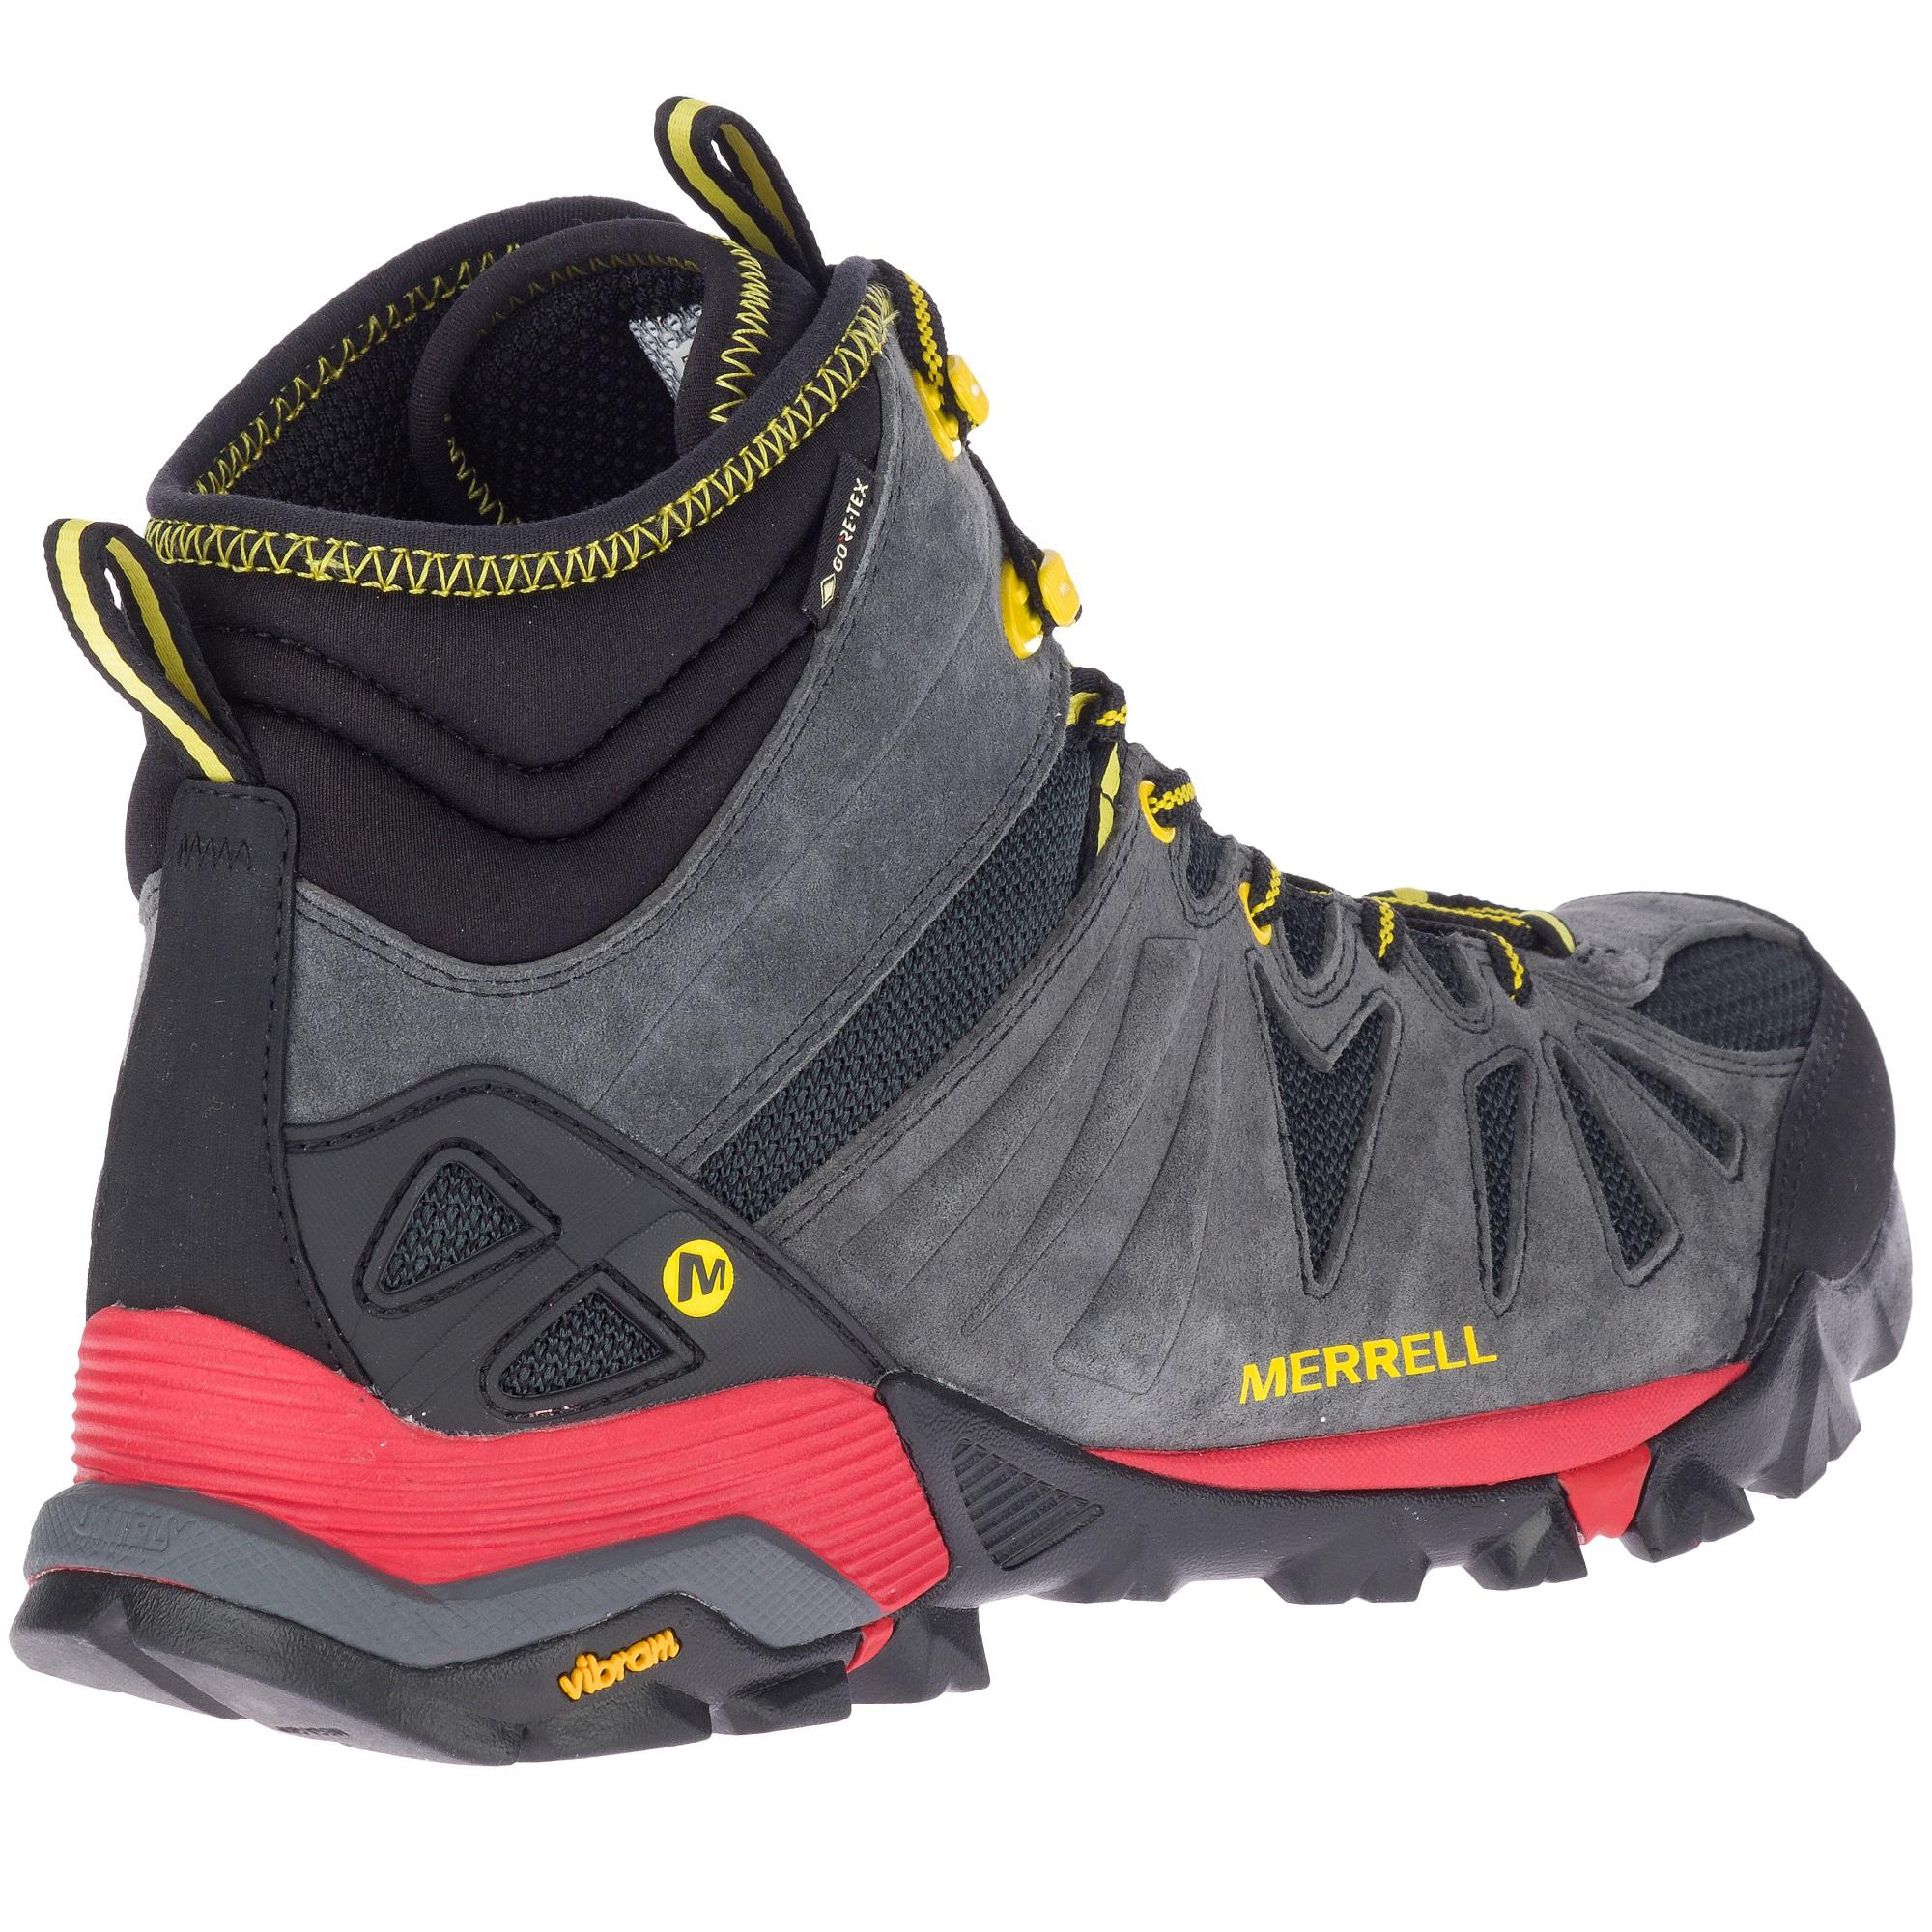 Men's waterproof walking boots - Merrell Capra Mid Gore-tex 2/5